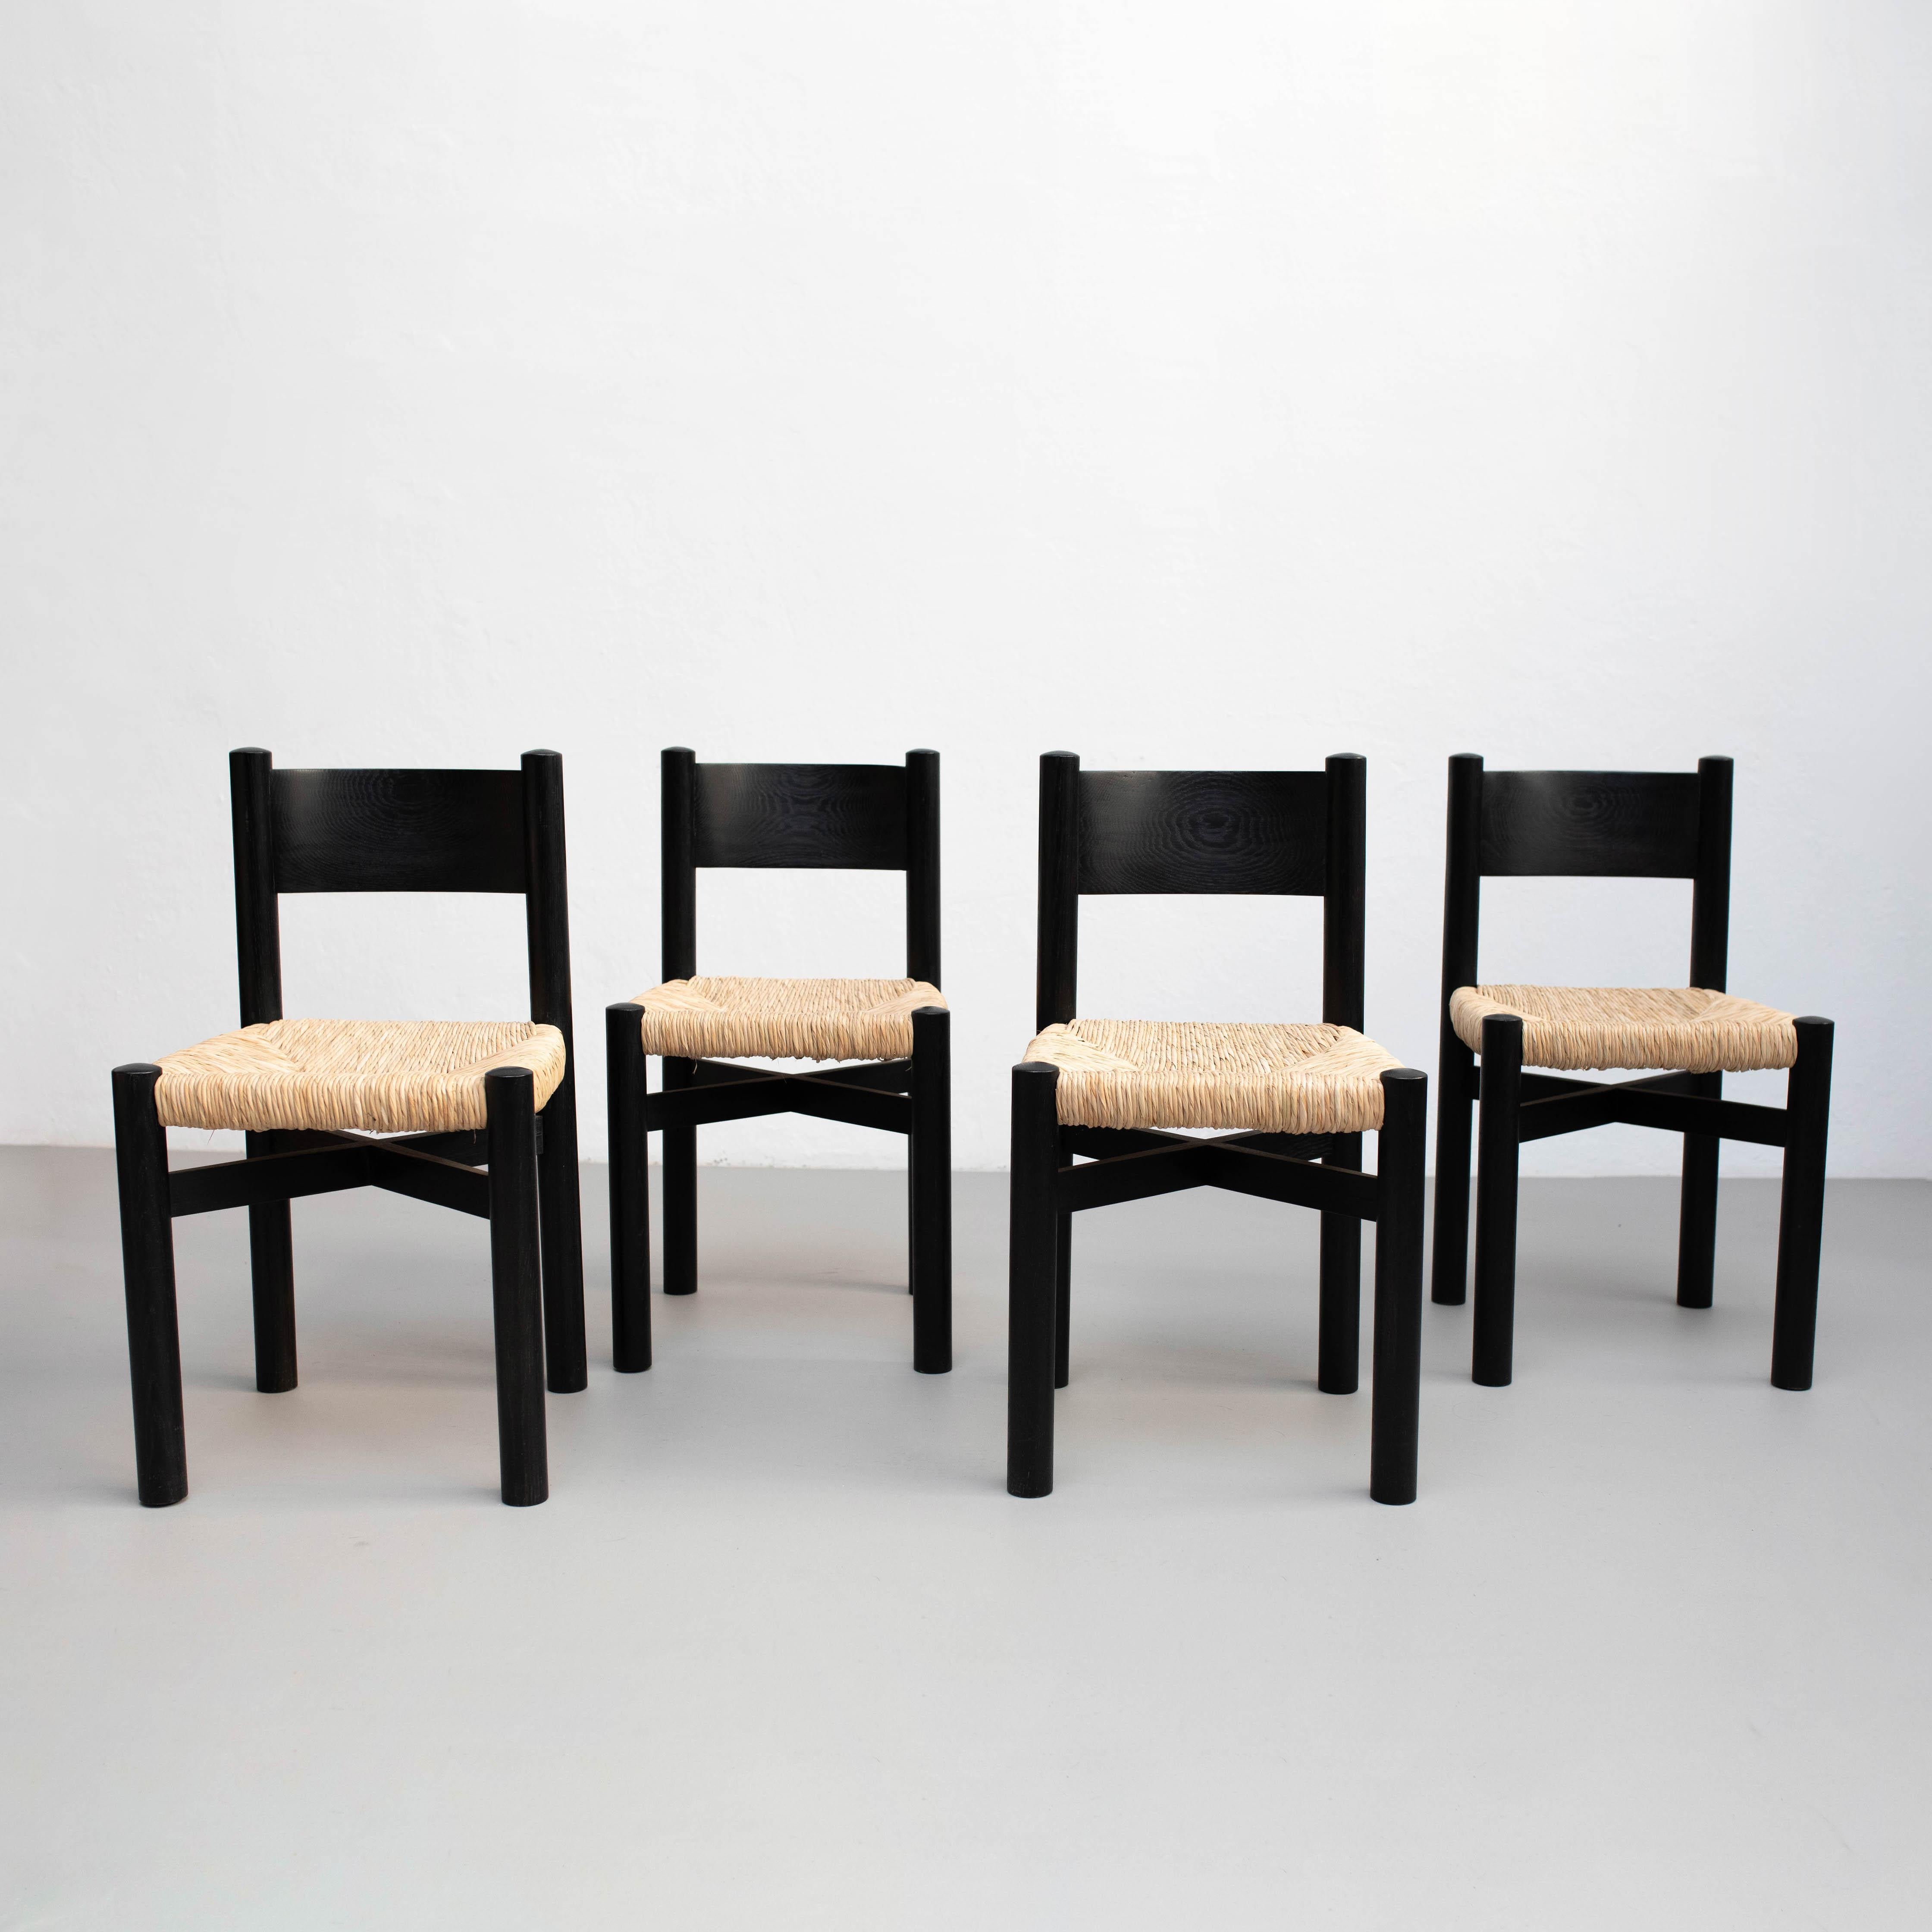 Satz von vier Stühlen aus Holz und Rattan nach Charlotte Perriand, um 1980.

Unbekannter Hersteller.

In gutem Originalzustand mit geringen alters- und gebrauchsbedingten Abnutzungserscheinungen, die eine schöne Patina erhalten